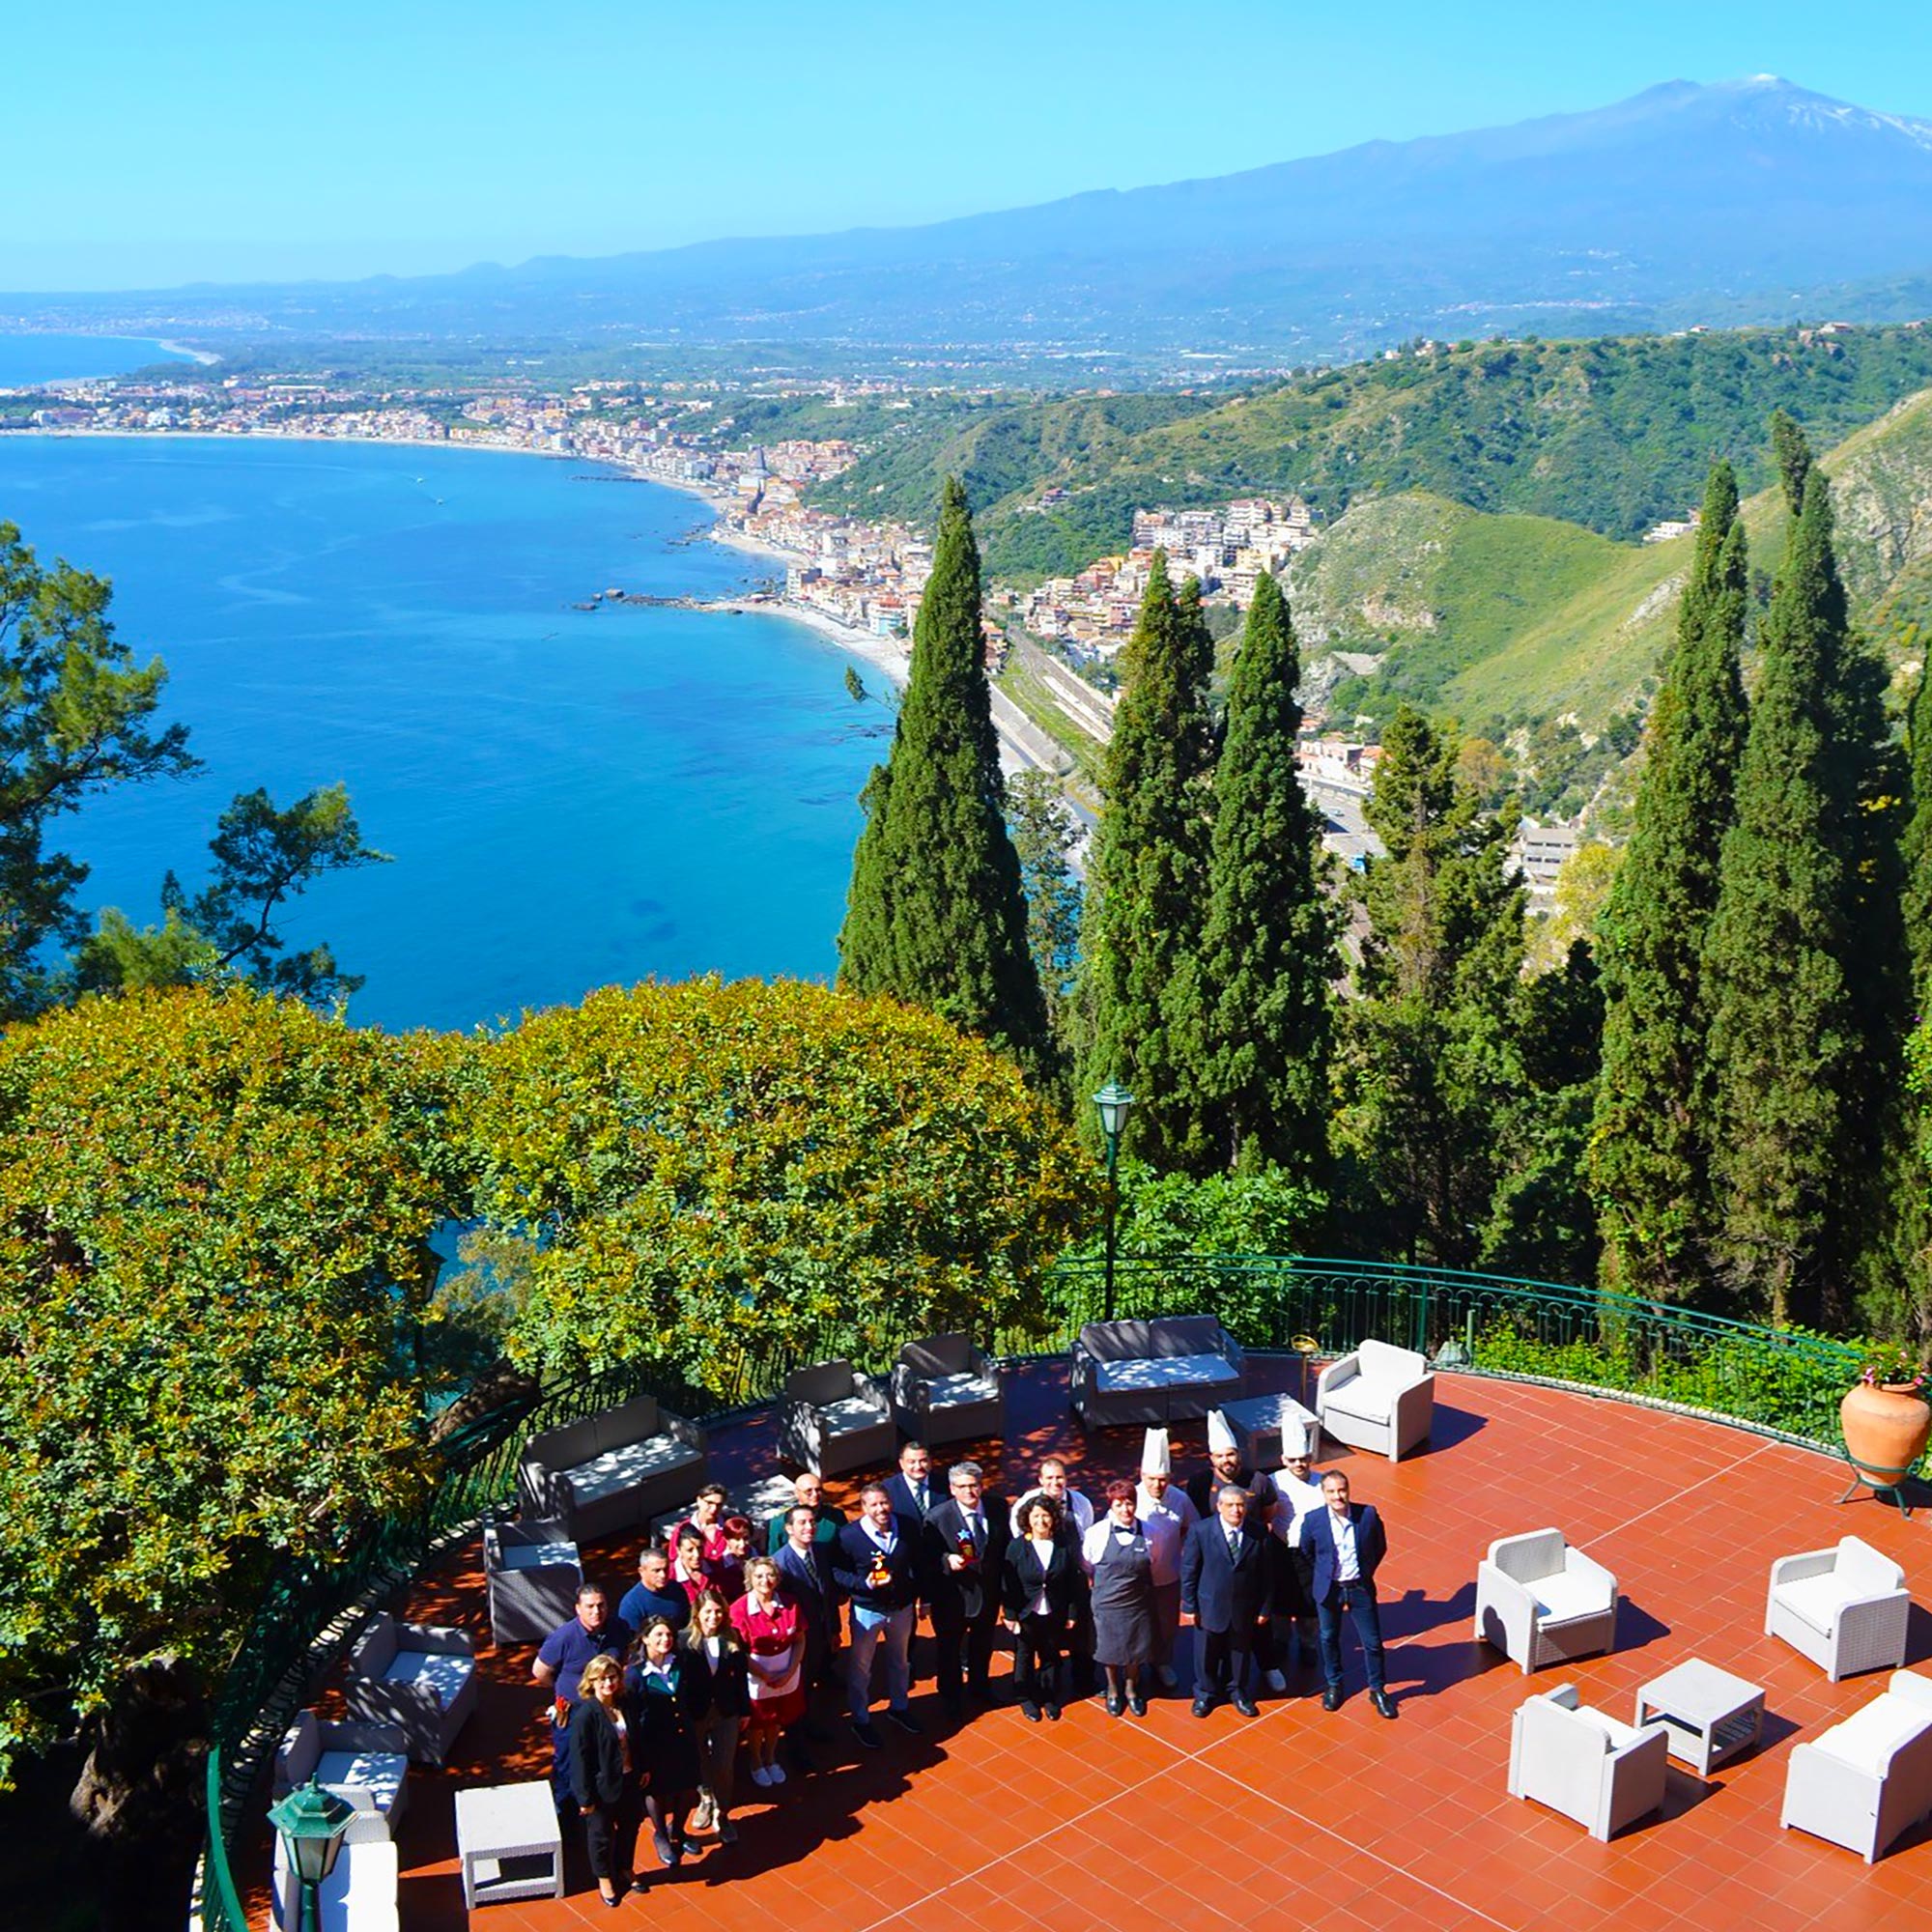 People Behind The Venue, Mount Etna, Hotel Villa Diodoro, Prestigious Venues